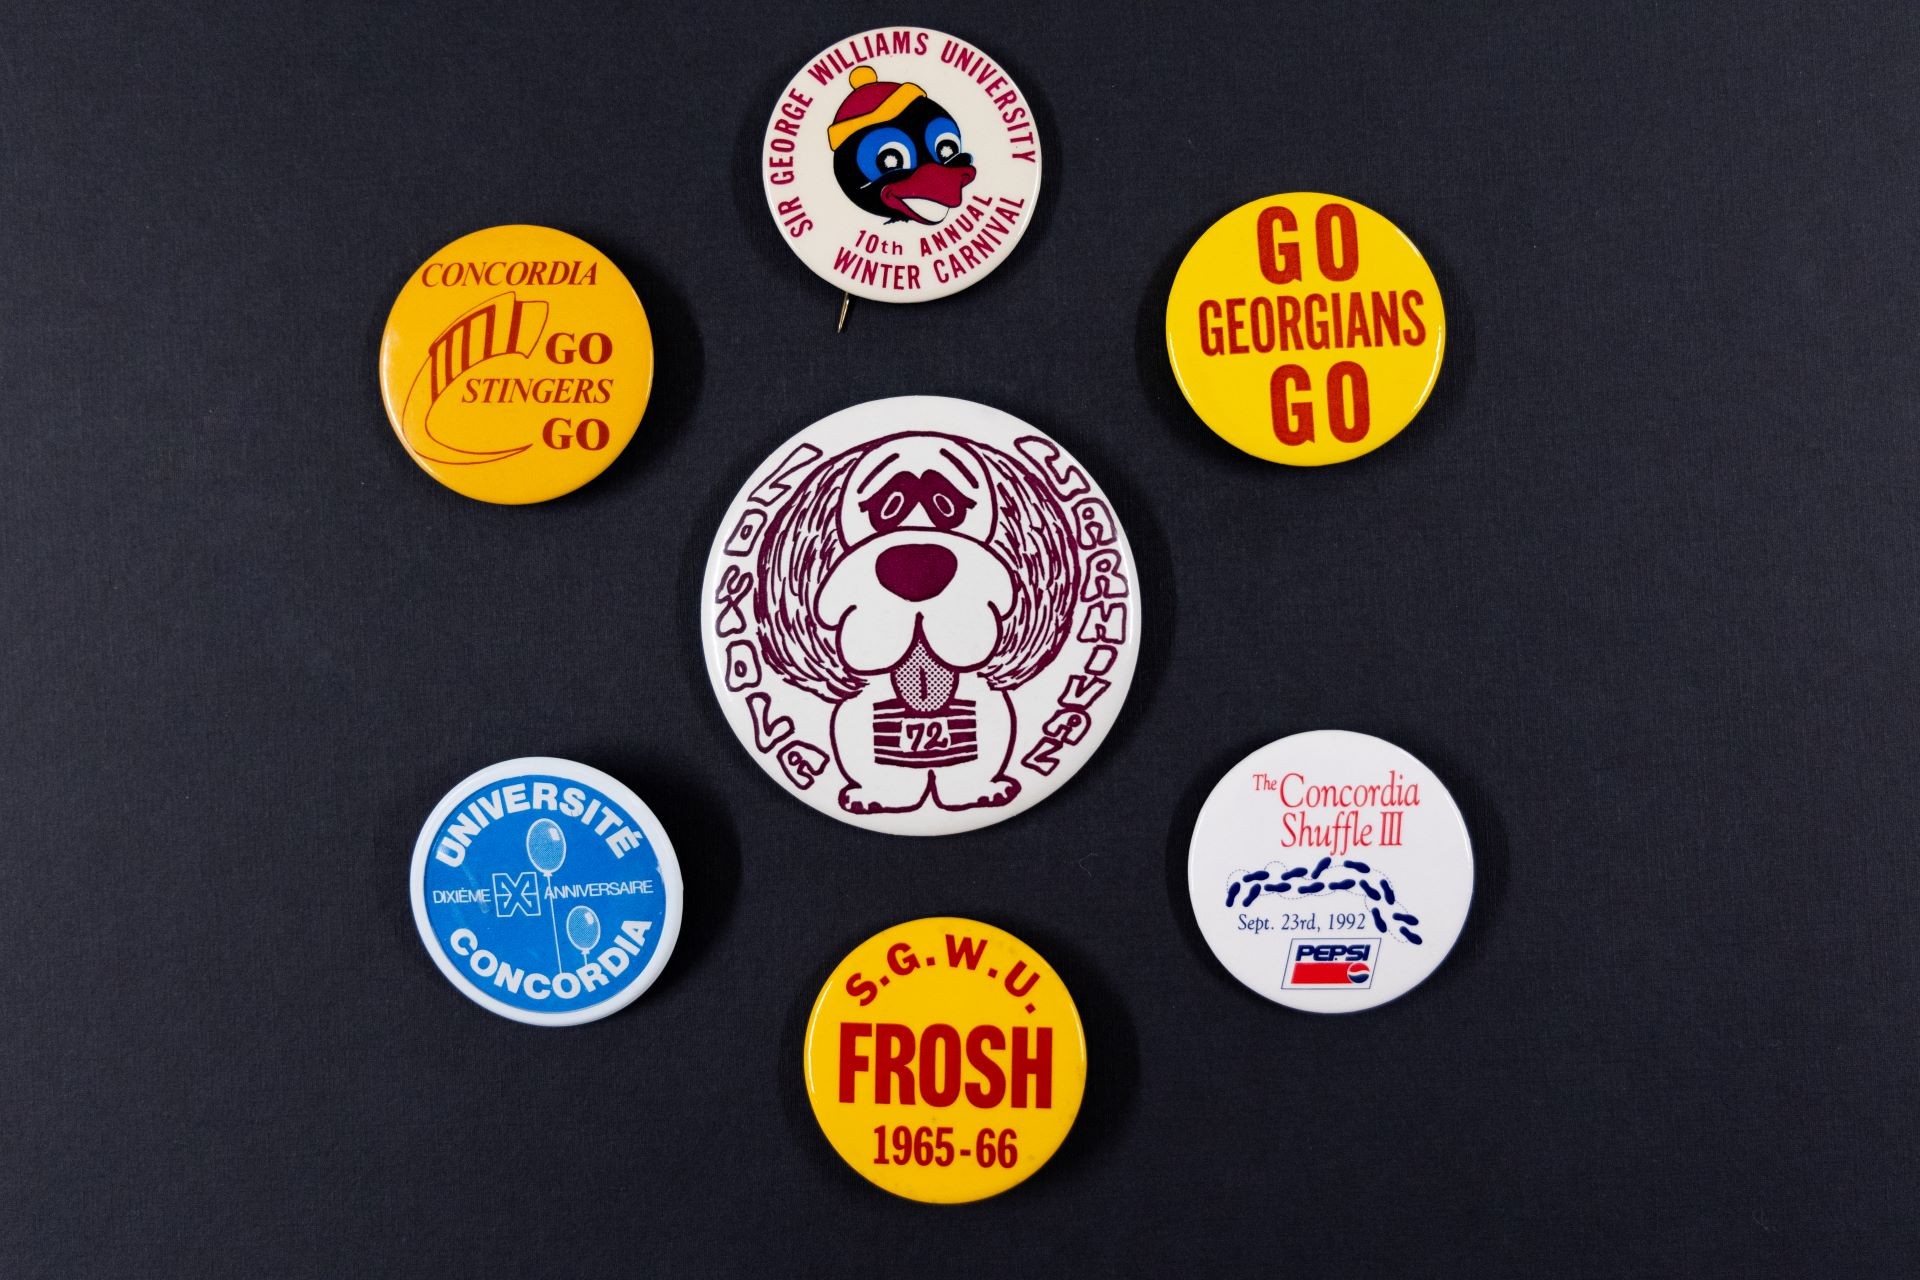 Une collection de sept badges assortis avec différents logos et textes représentant divers événements et étapes de l'université.